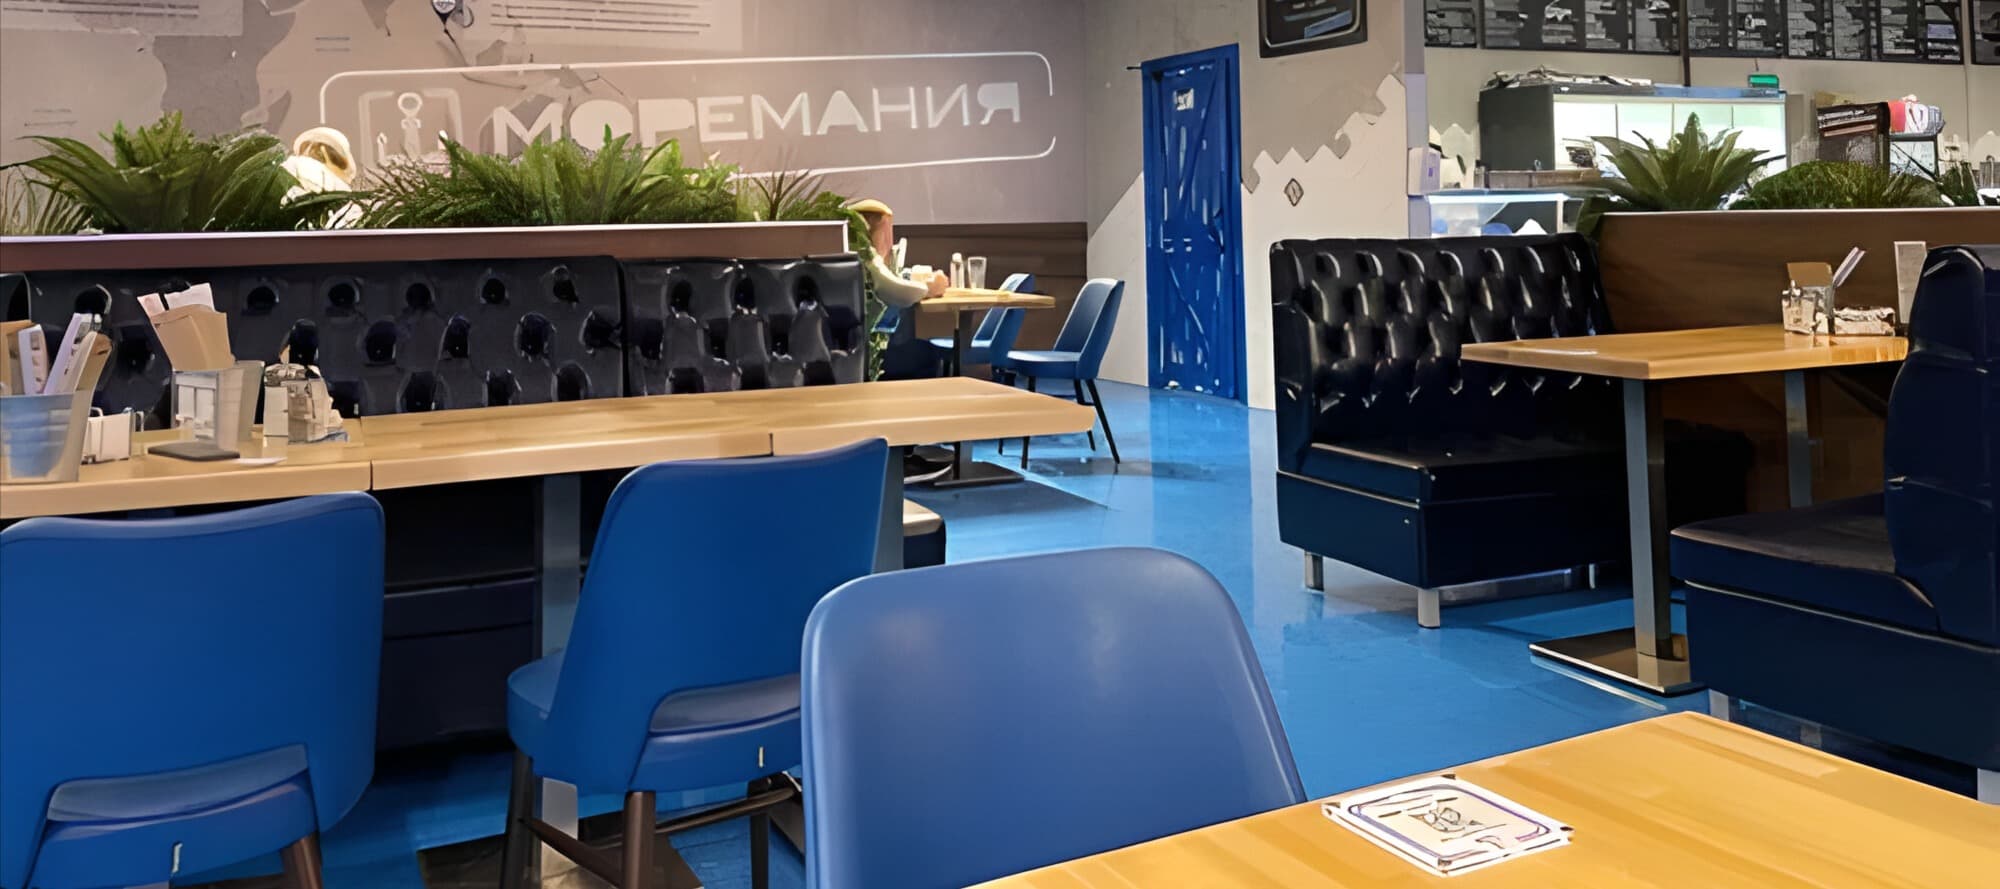 Фото новости: "Ресторан «Моремания» в центре Москвы закрыли после отравления посетителя"